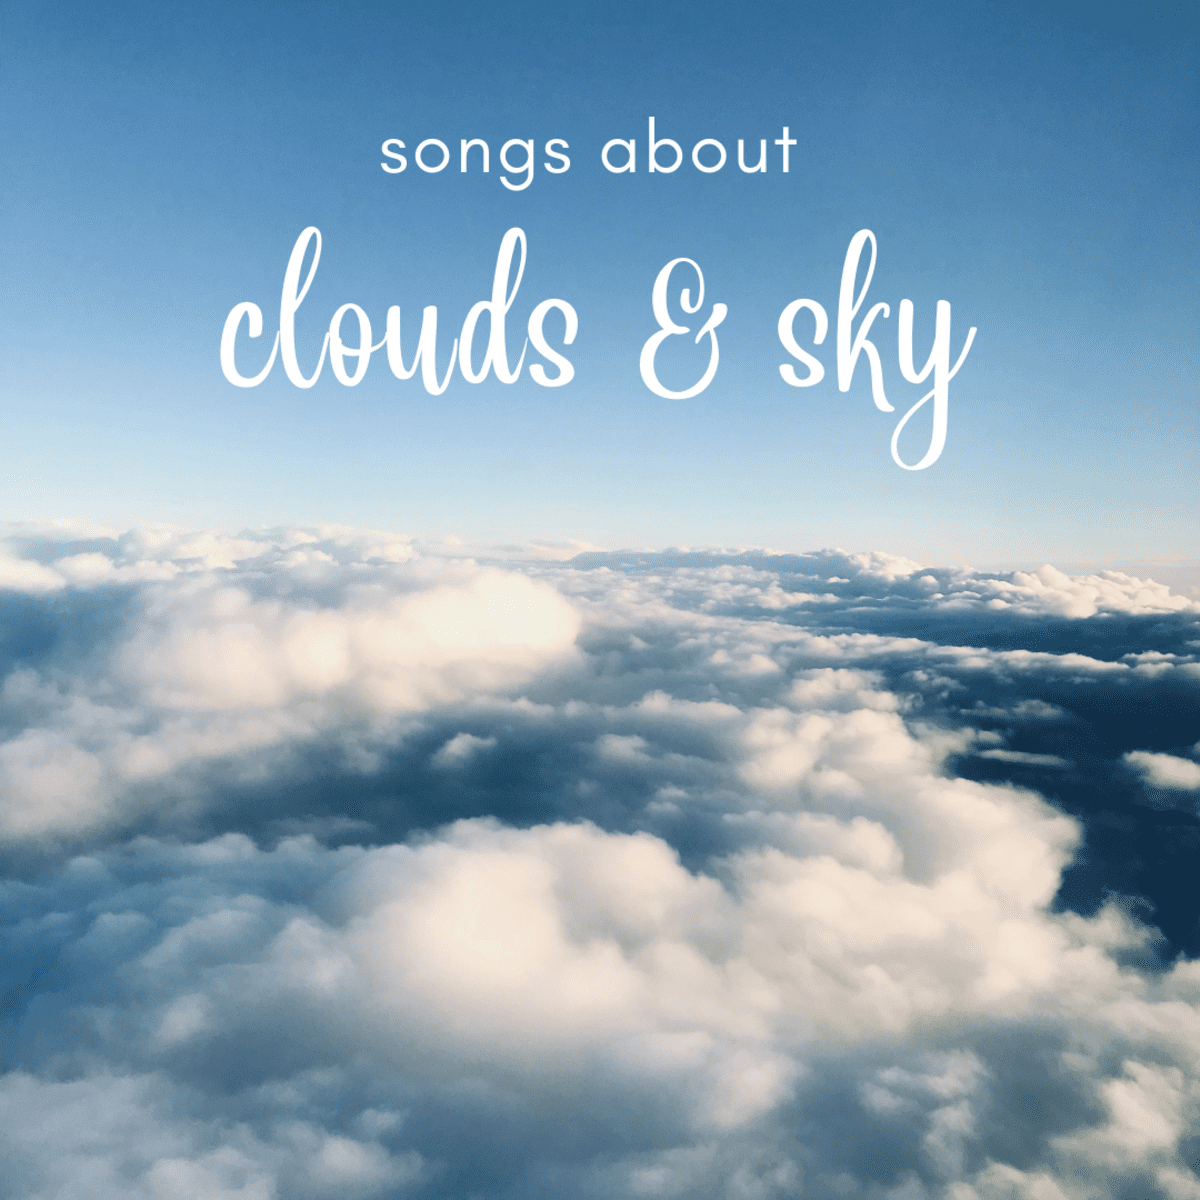 werkelijk flexibel van mening zijn 44 Songs About Clouds and the Sky - Spinditty